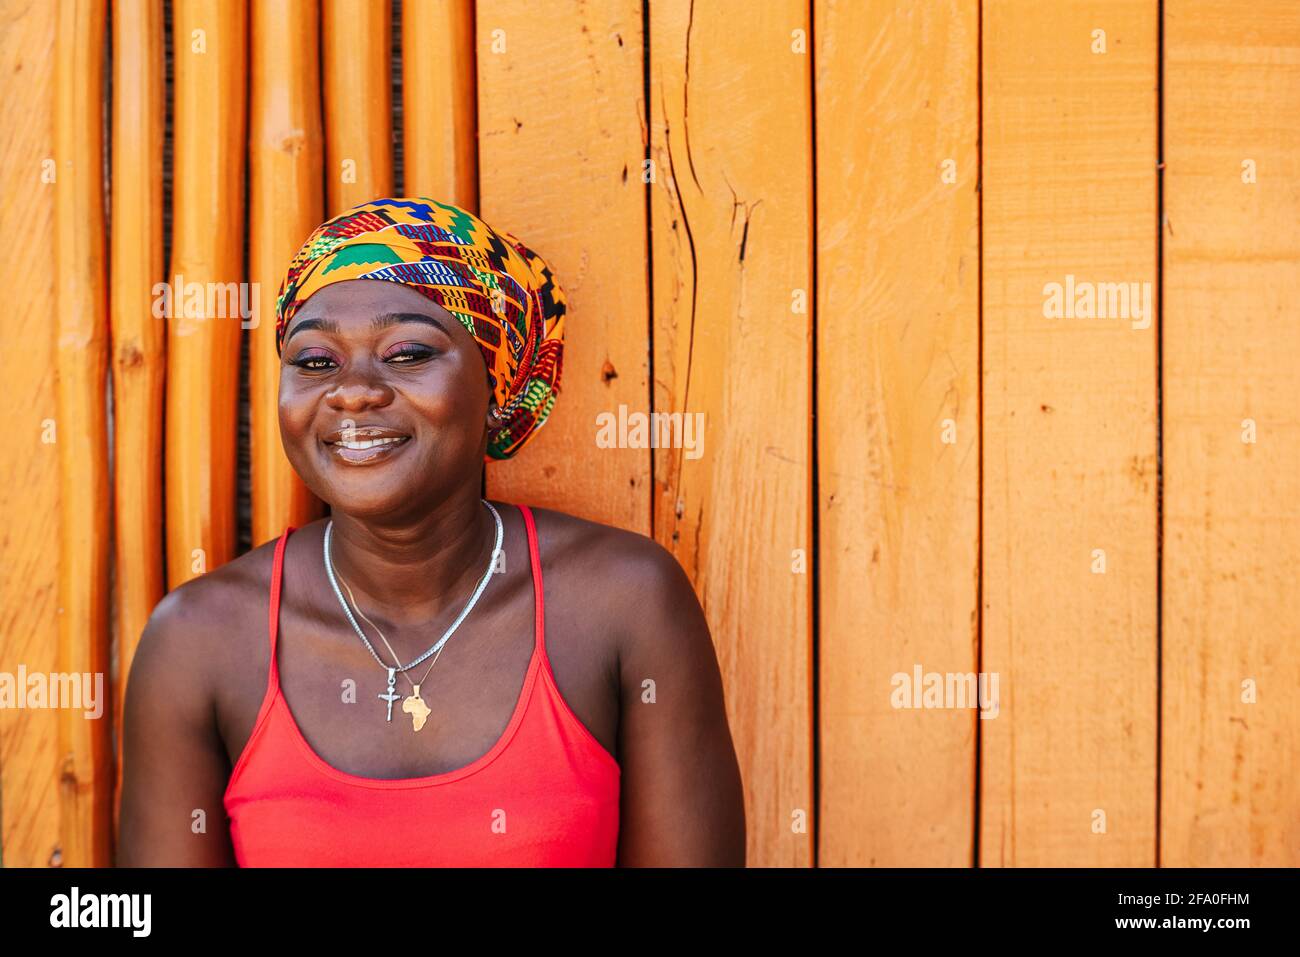 Afrikanische Frau mit einem hoffnungsvollen glücklichen Lächeln, das gegen eine steht Bemalte Holzwand im tropischen Dorf Keta Ghana Westafrika Stockfoto